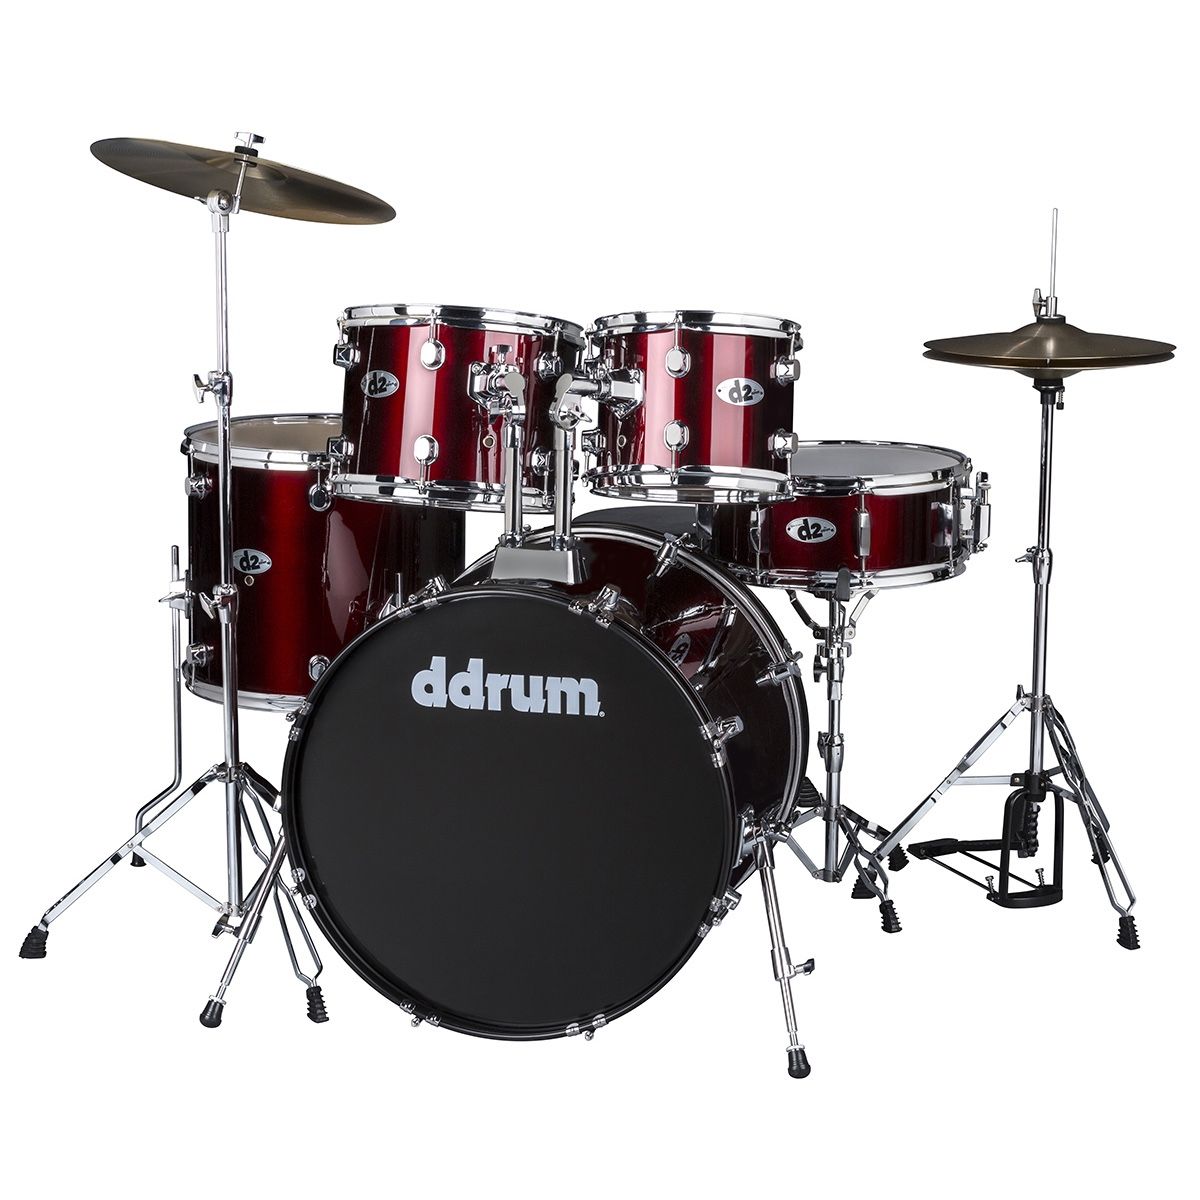 Ddrum D2 - Blood Red - 5 piece drum kit